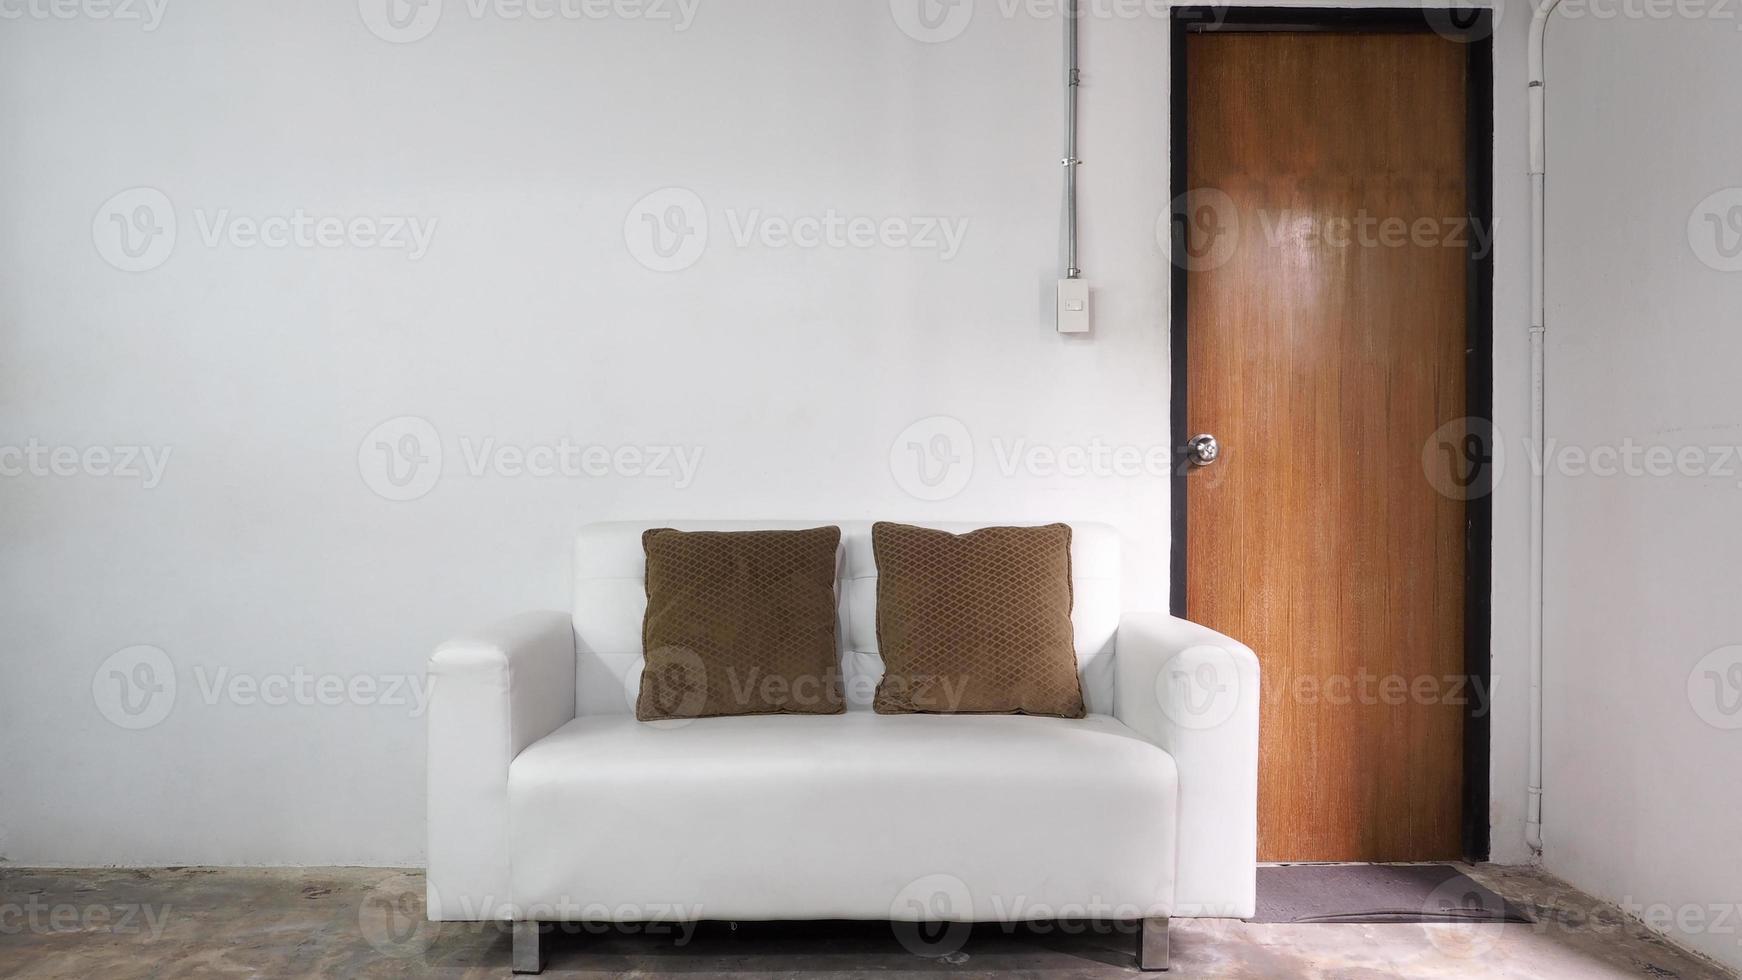 vit läder soffa och vit gammal vägg och gammal trä dörr i rum. foto